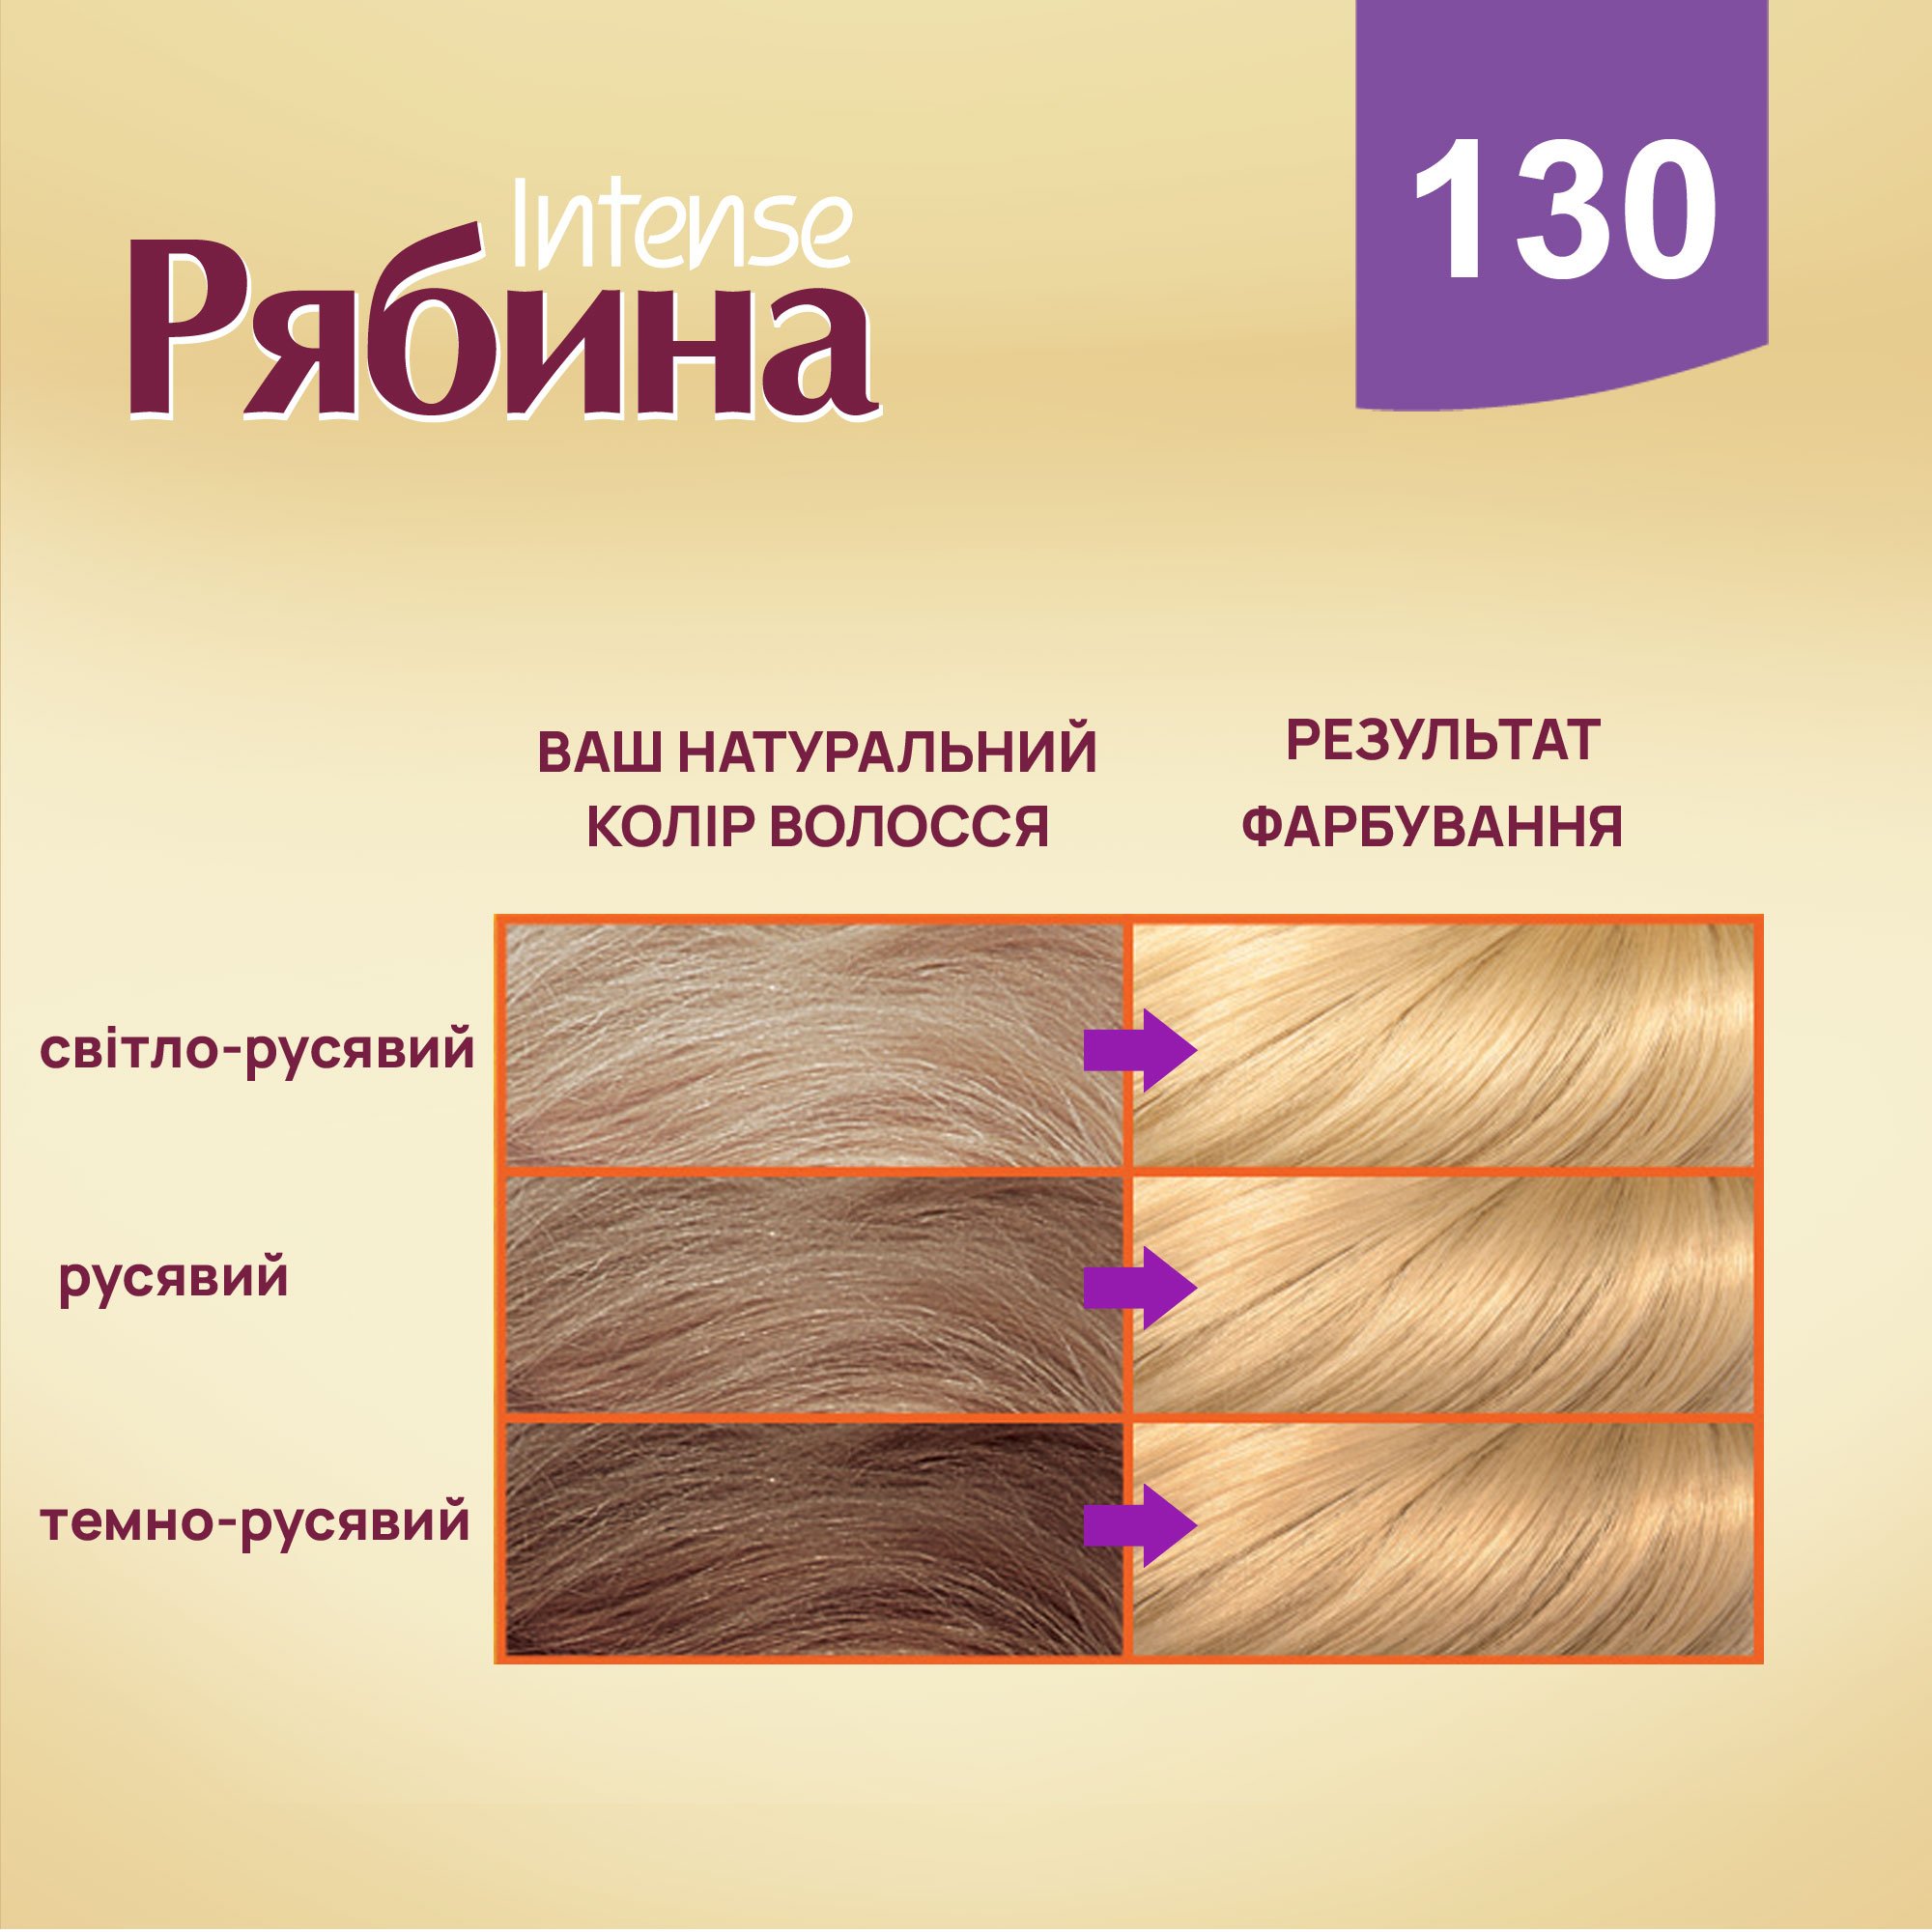 Крем-фарба для волосся Рябина Intense, відтінок 130 (Пшениця), 138 мл - фото 3